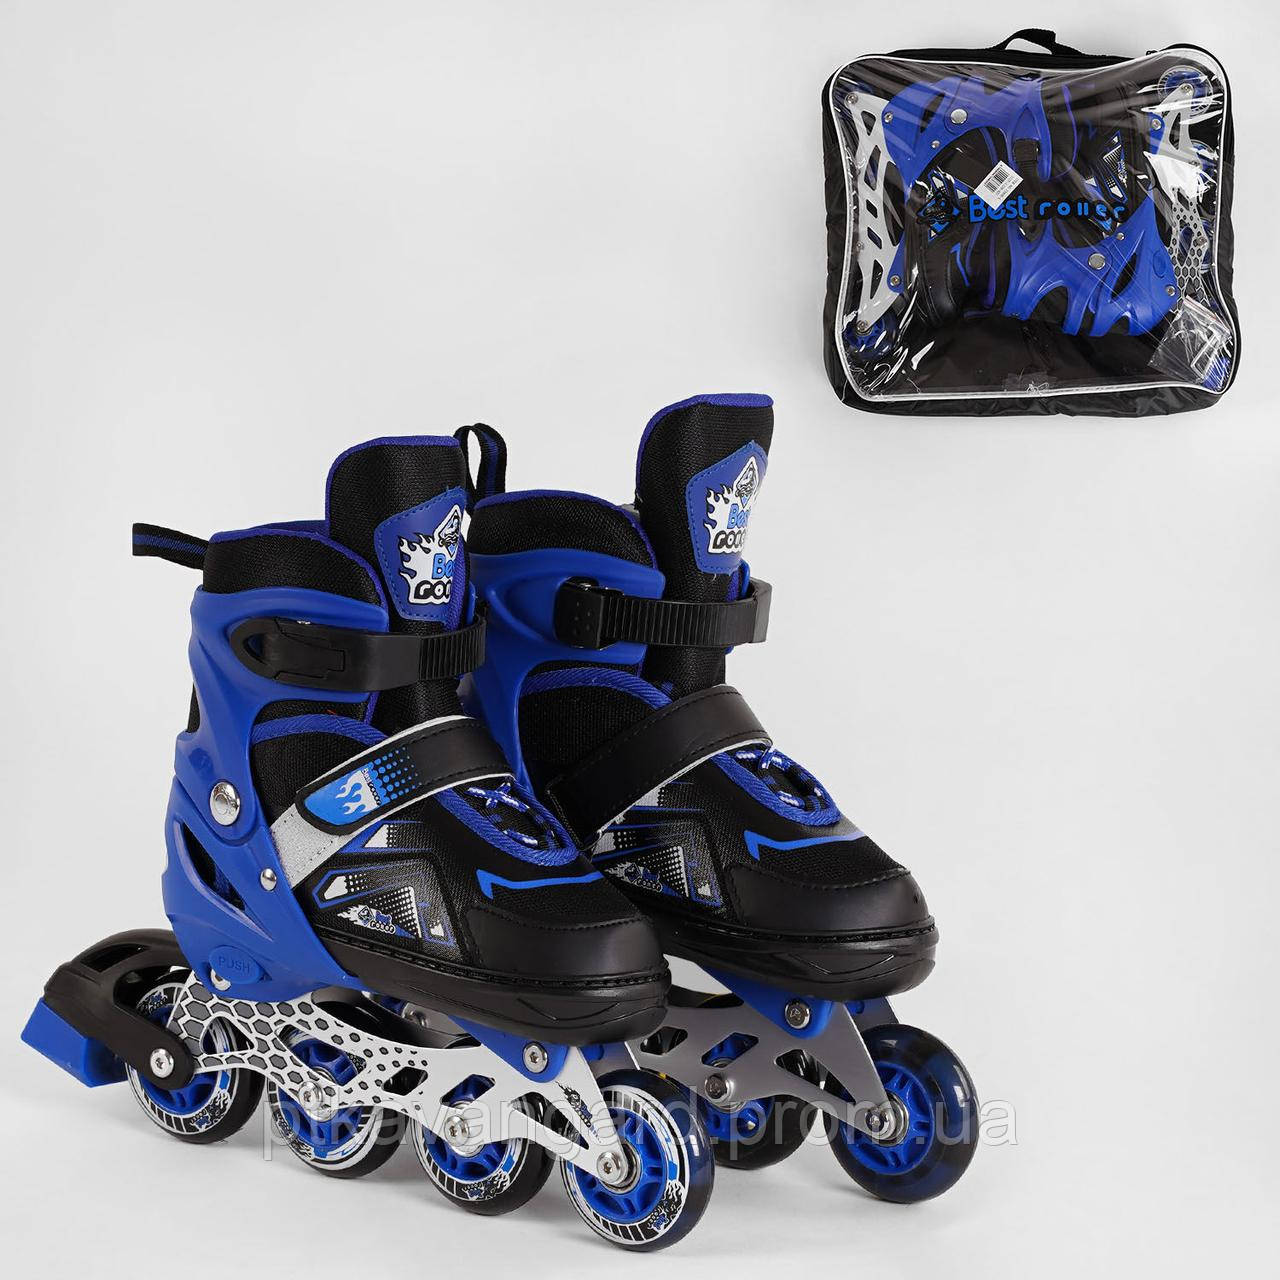 Дитячі ролики (роликові ковзани) Синій для хлопчиків розмір 34-37 (М) Best Roller колеса PU